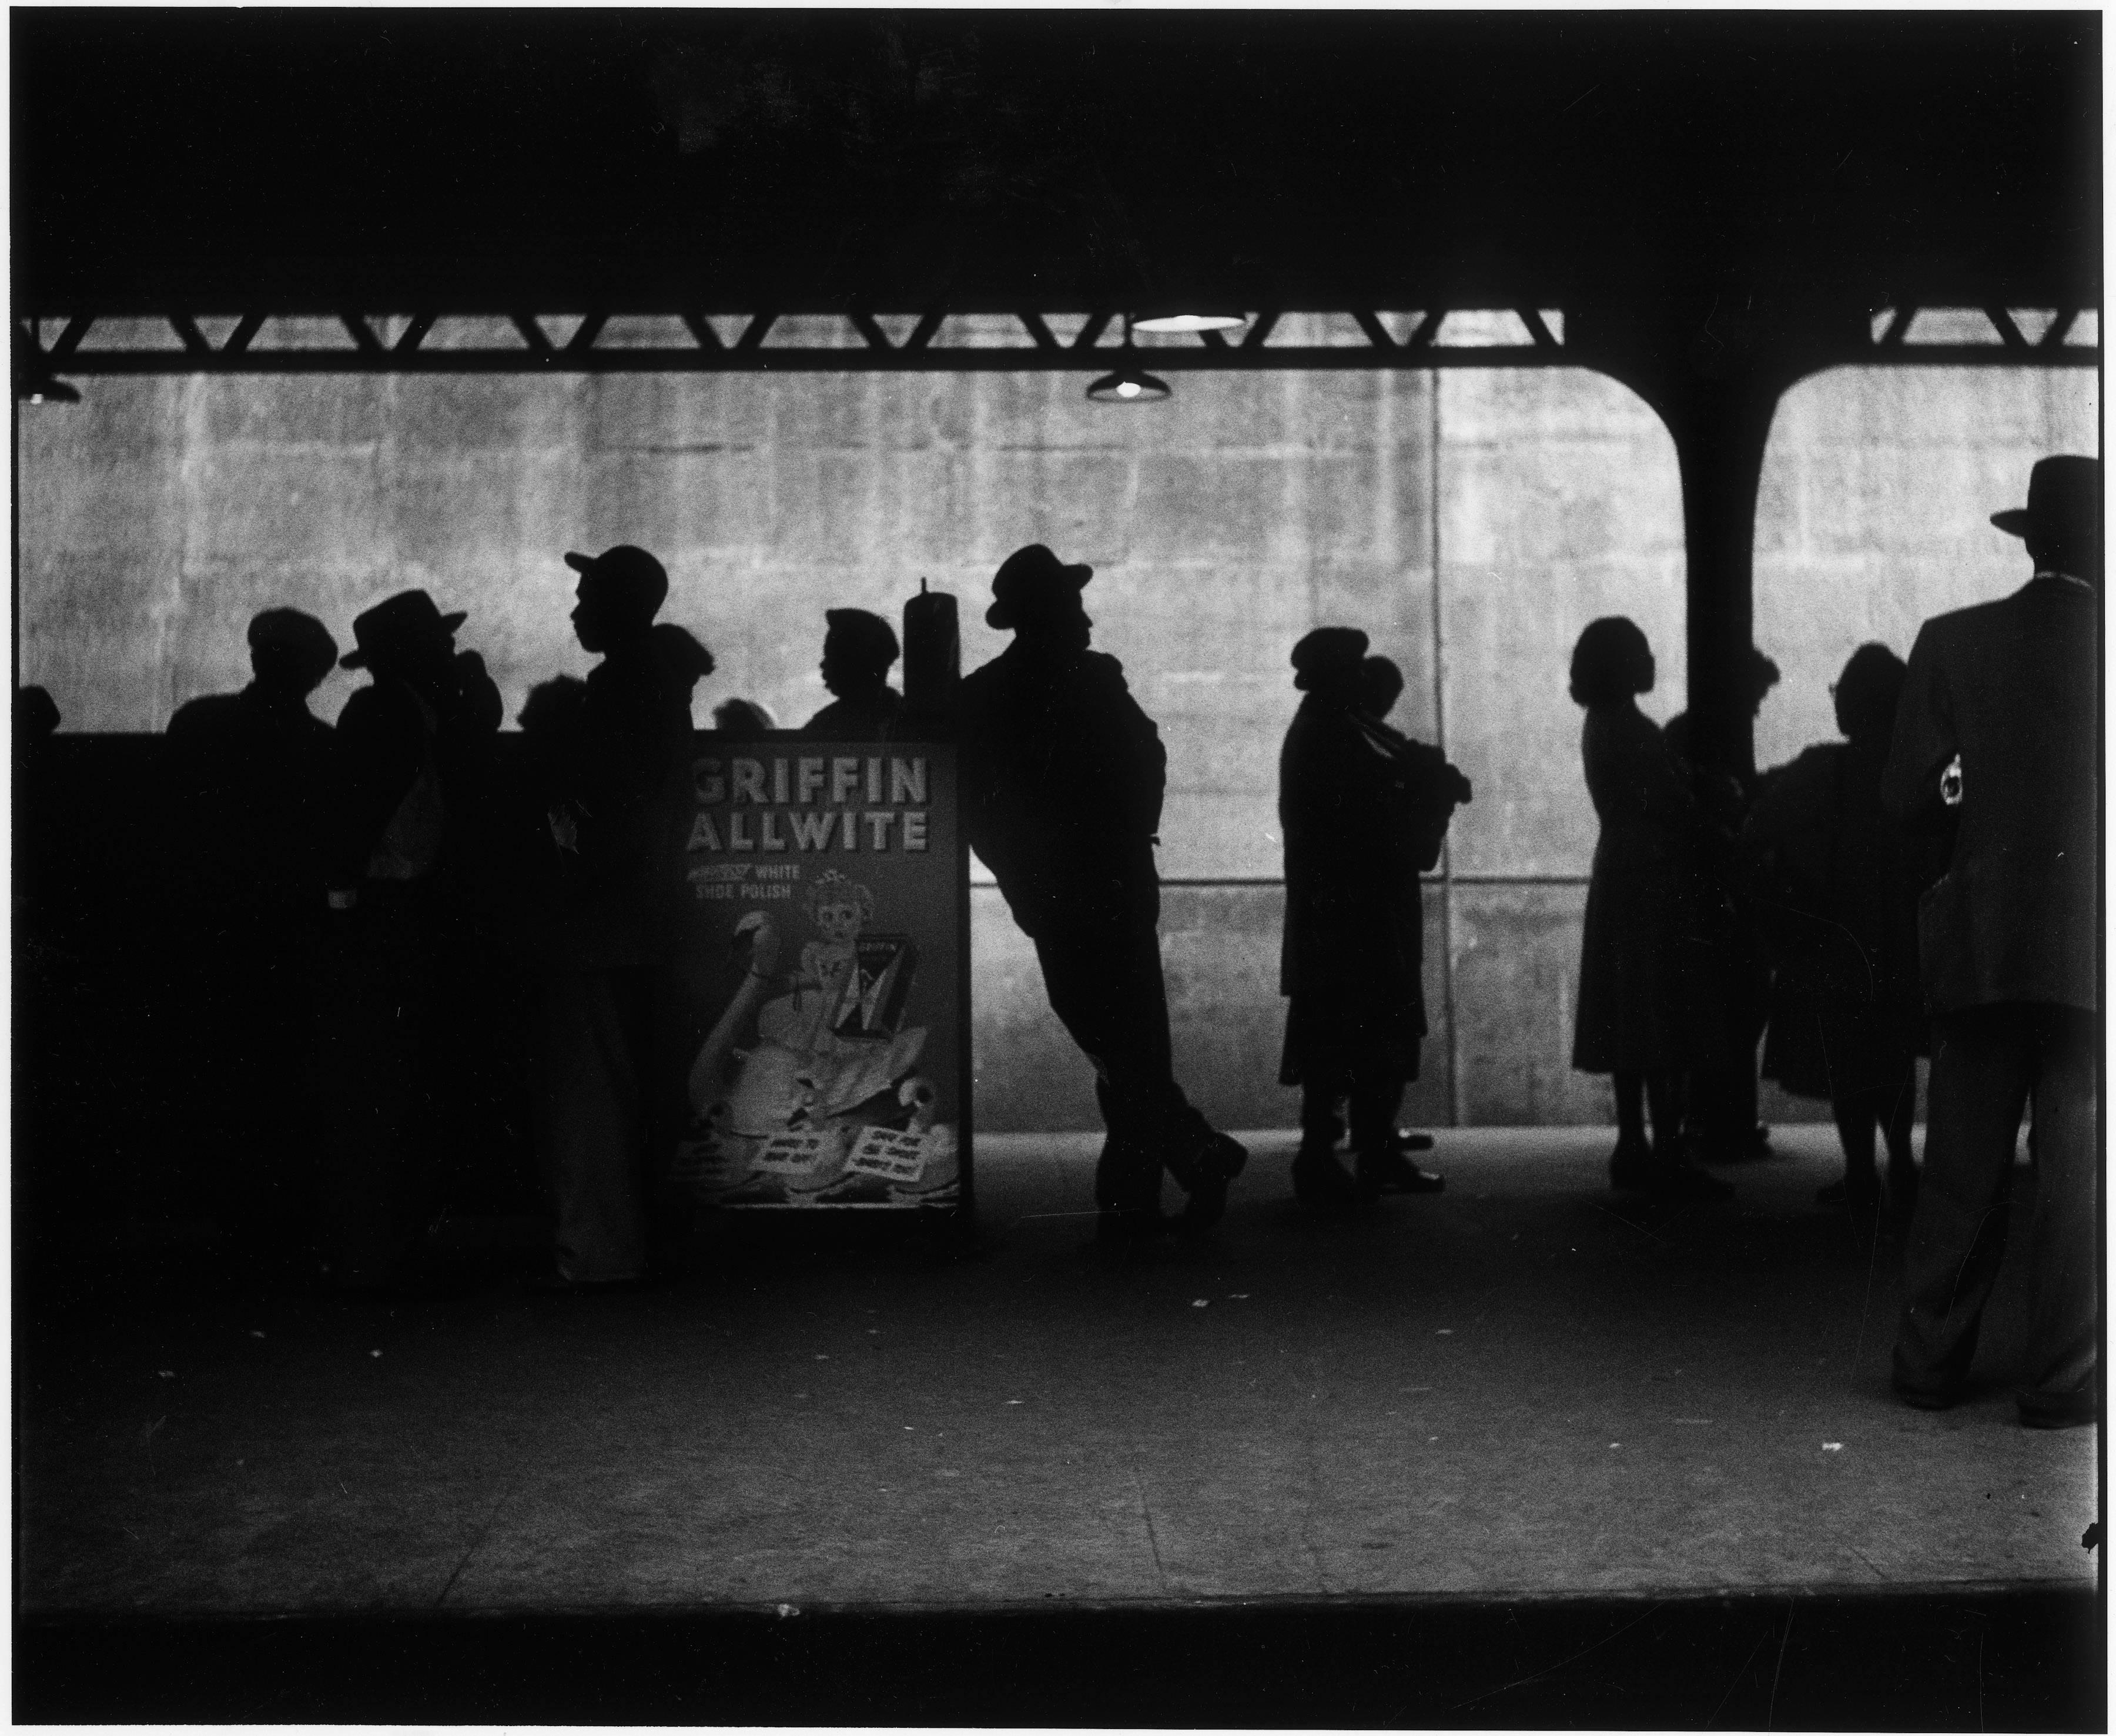 New York City, 1948 - Elliott Erwitt (Schwarz-Weiß-Fotografie)
Signiert, betitelt und datiert auf dem beiliegenden Etikett des Künstlers
Silbergelatineabzug, später gedruckt

Erhältlich in vier Größen:
11 x 14 Zoll
16 x 20 Zoll
20 x 24 Zoll
30 x 40